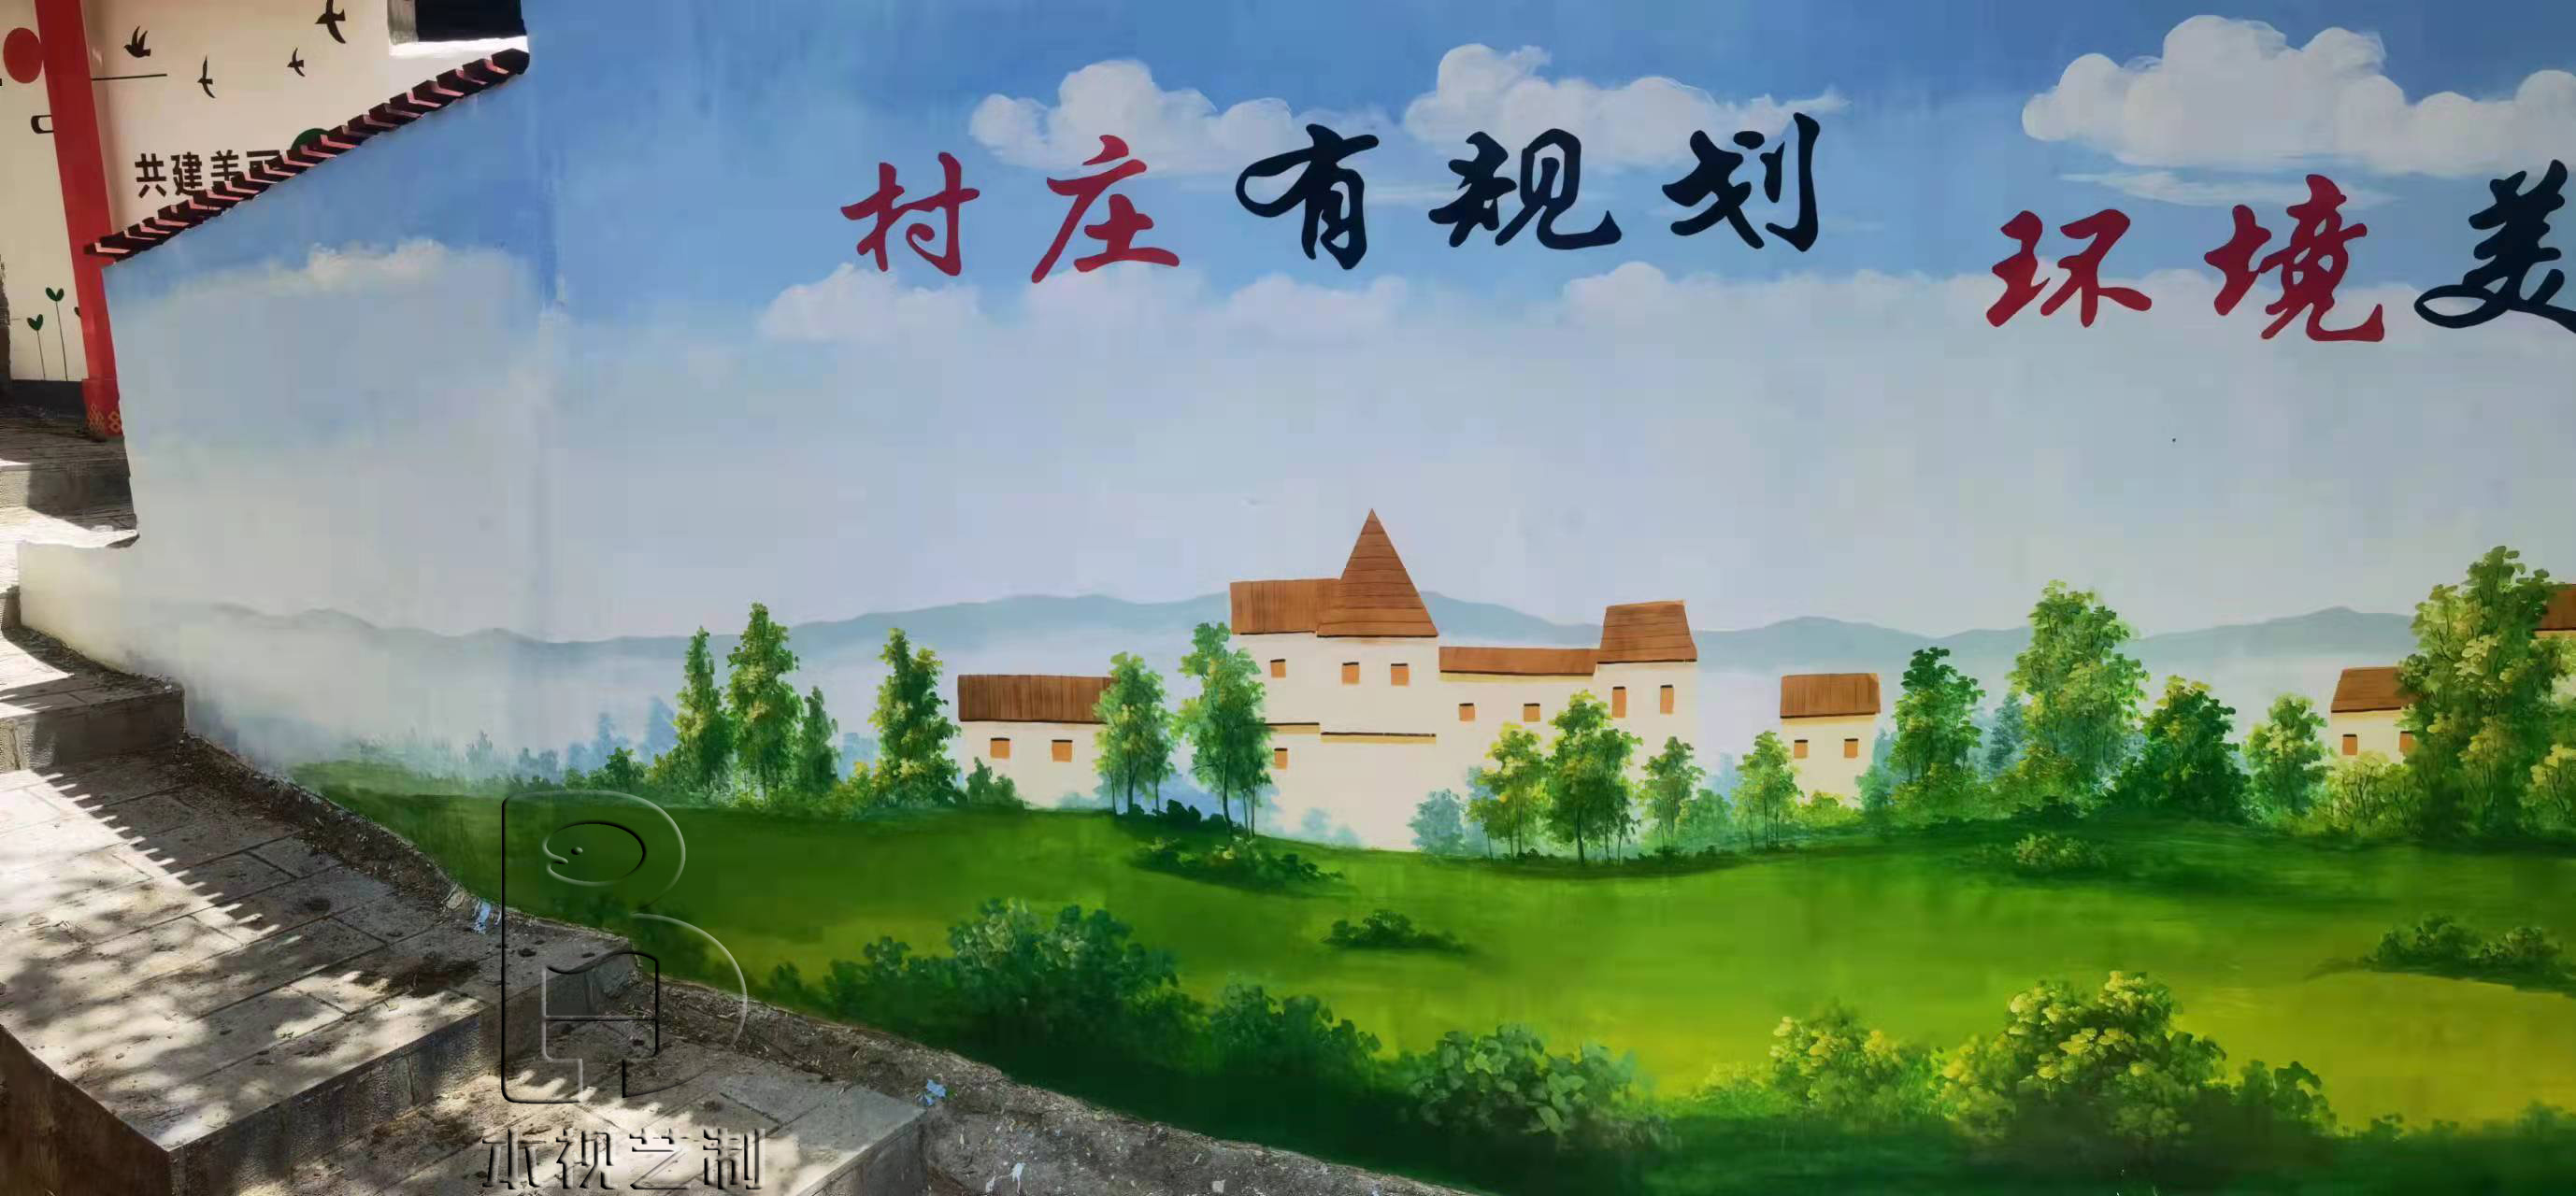 香格里拉乡村文化墙彩绘